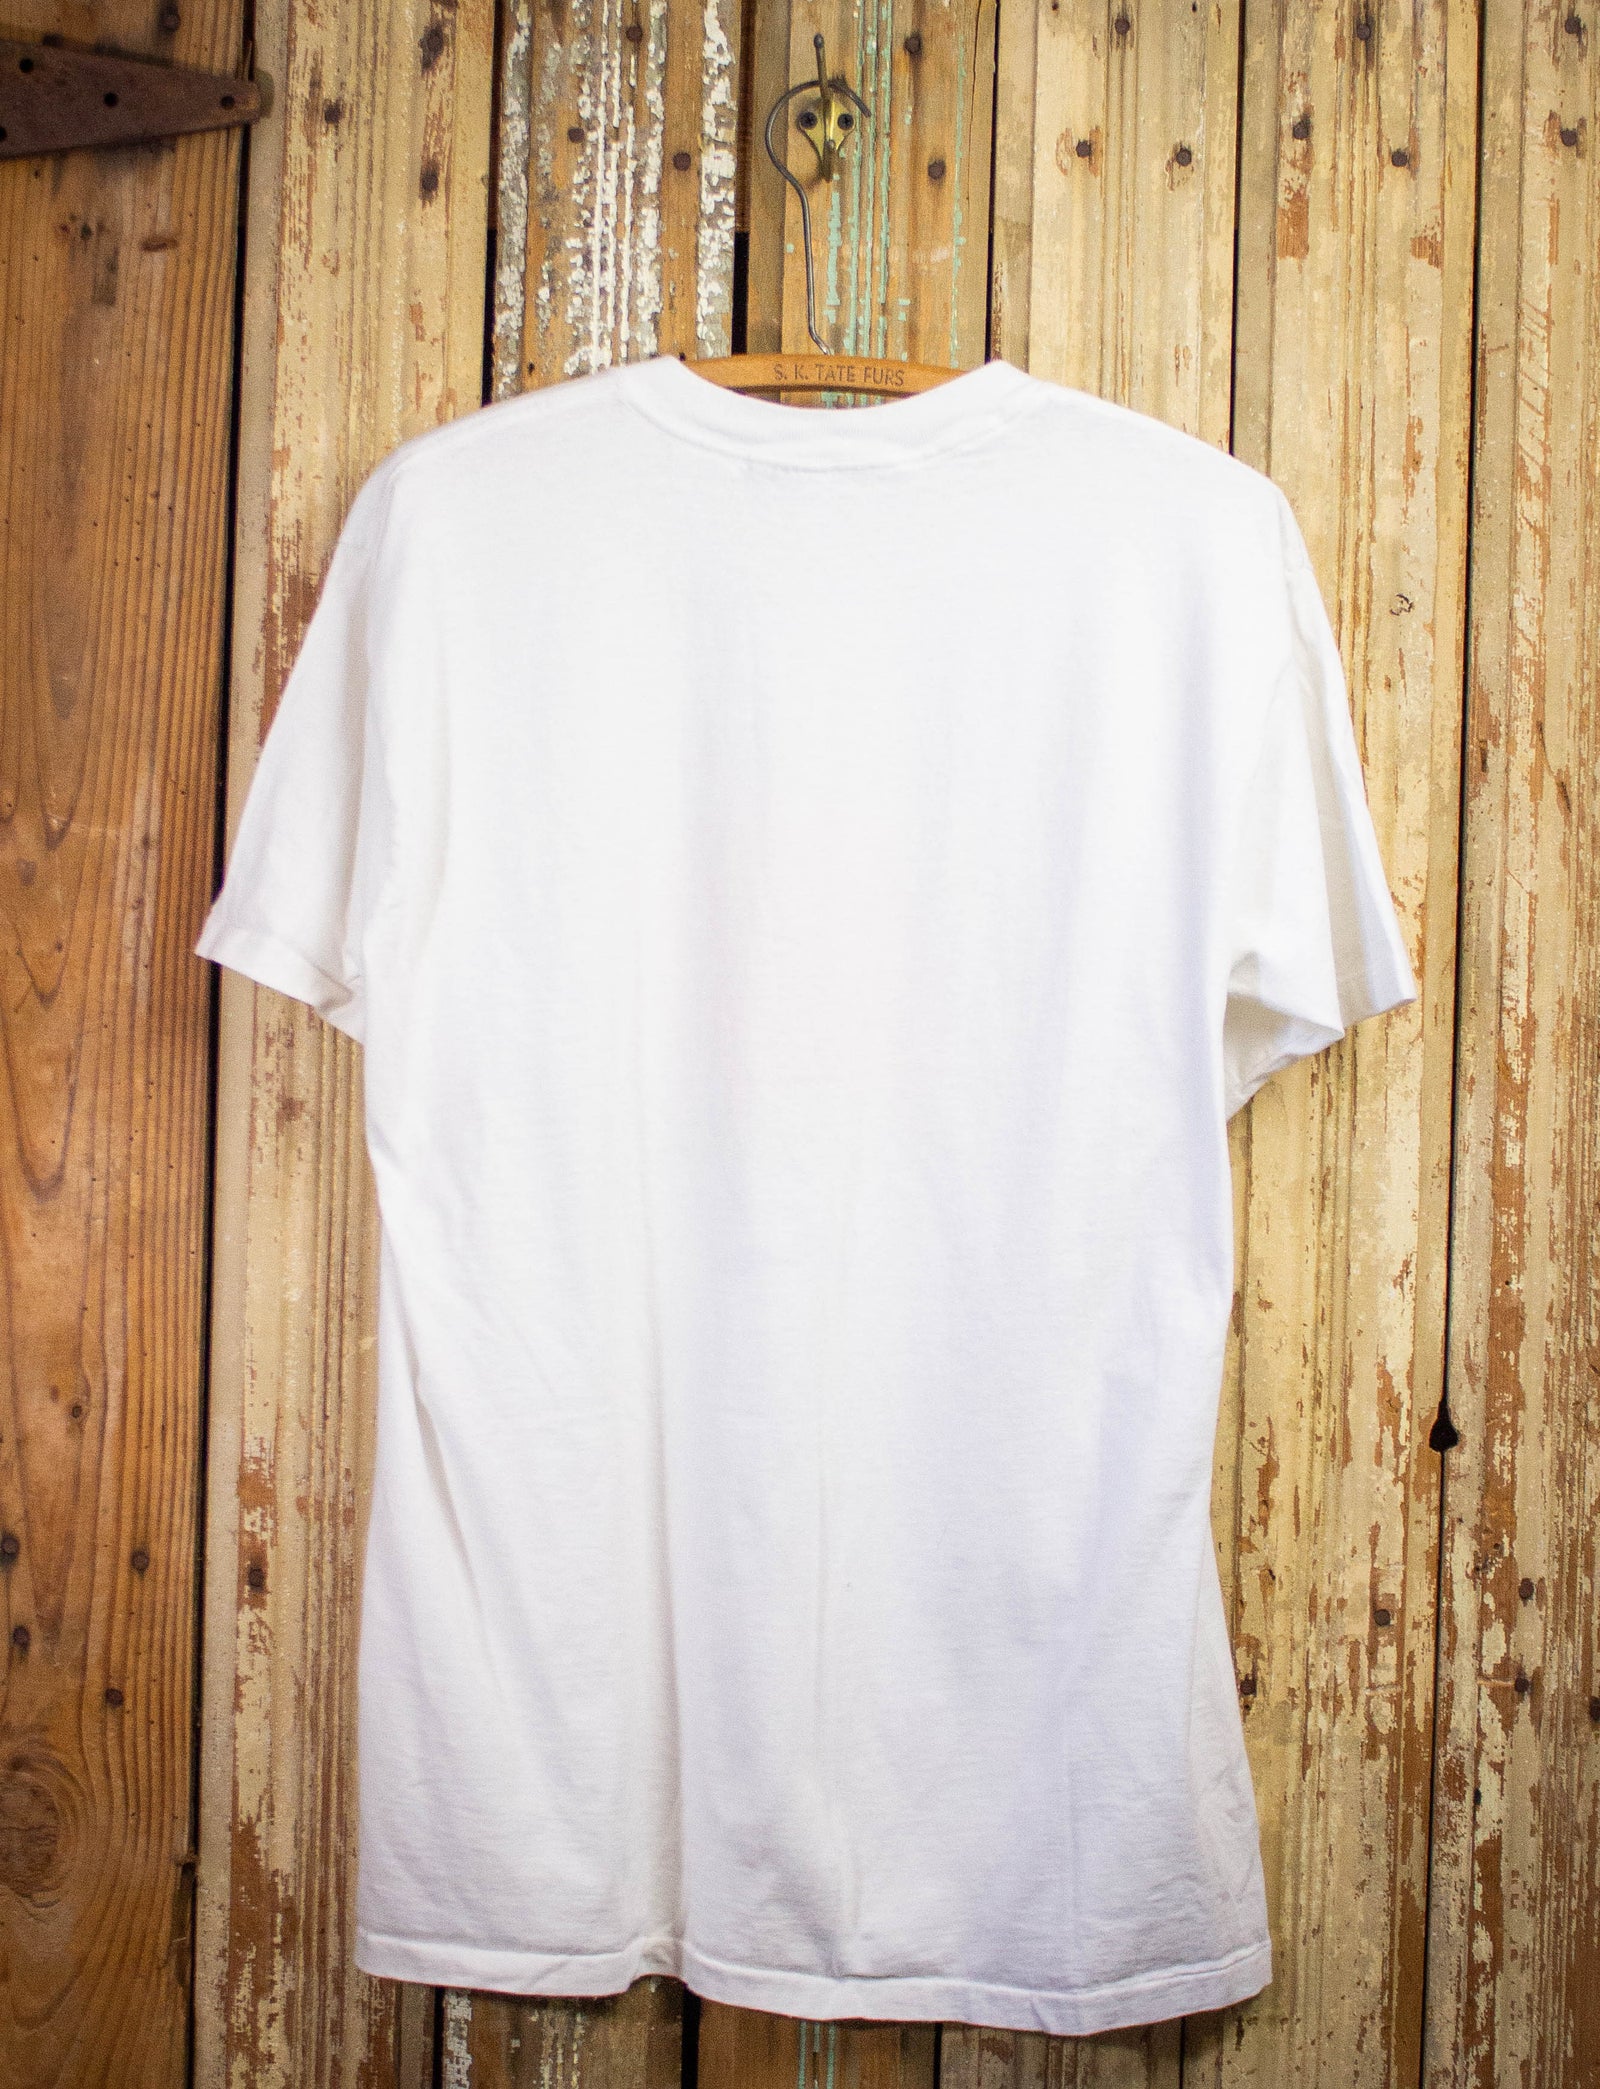 Vintage Dilemma Cat Graphic T Shirt 1989 White XL